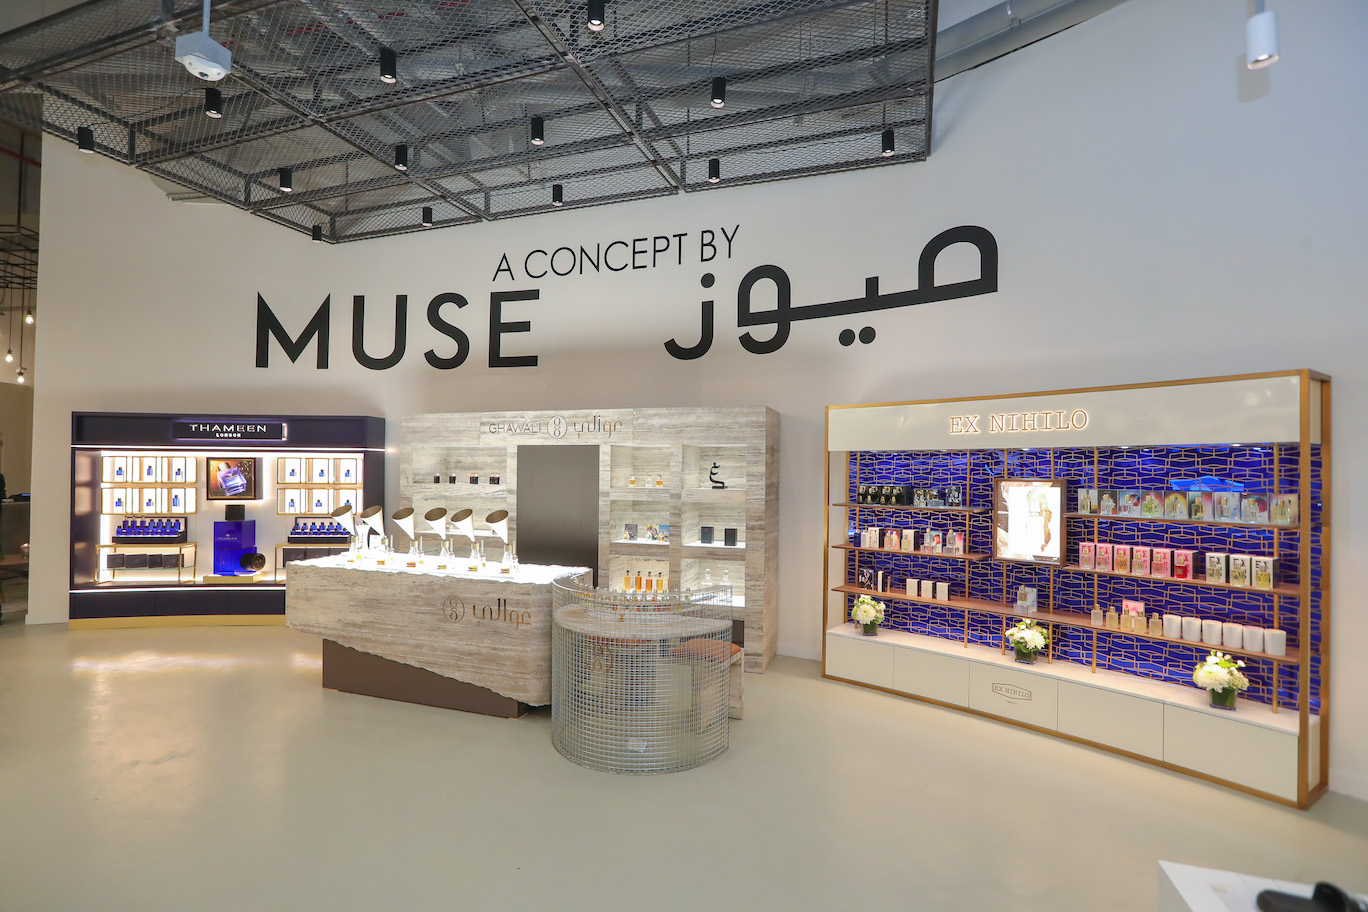 إفتتاح وجهة التسوقٍ A Concept by MUSE في مول الرياض بارك